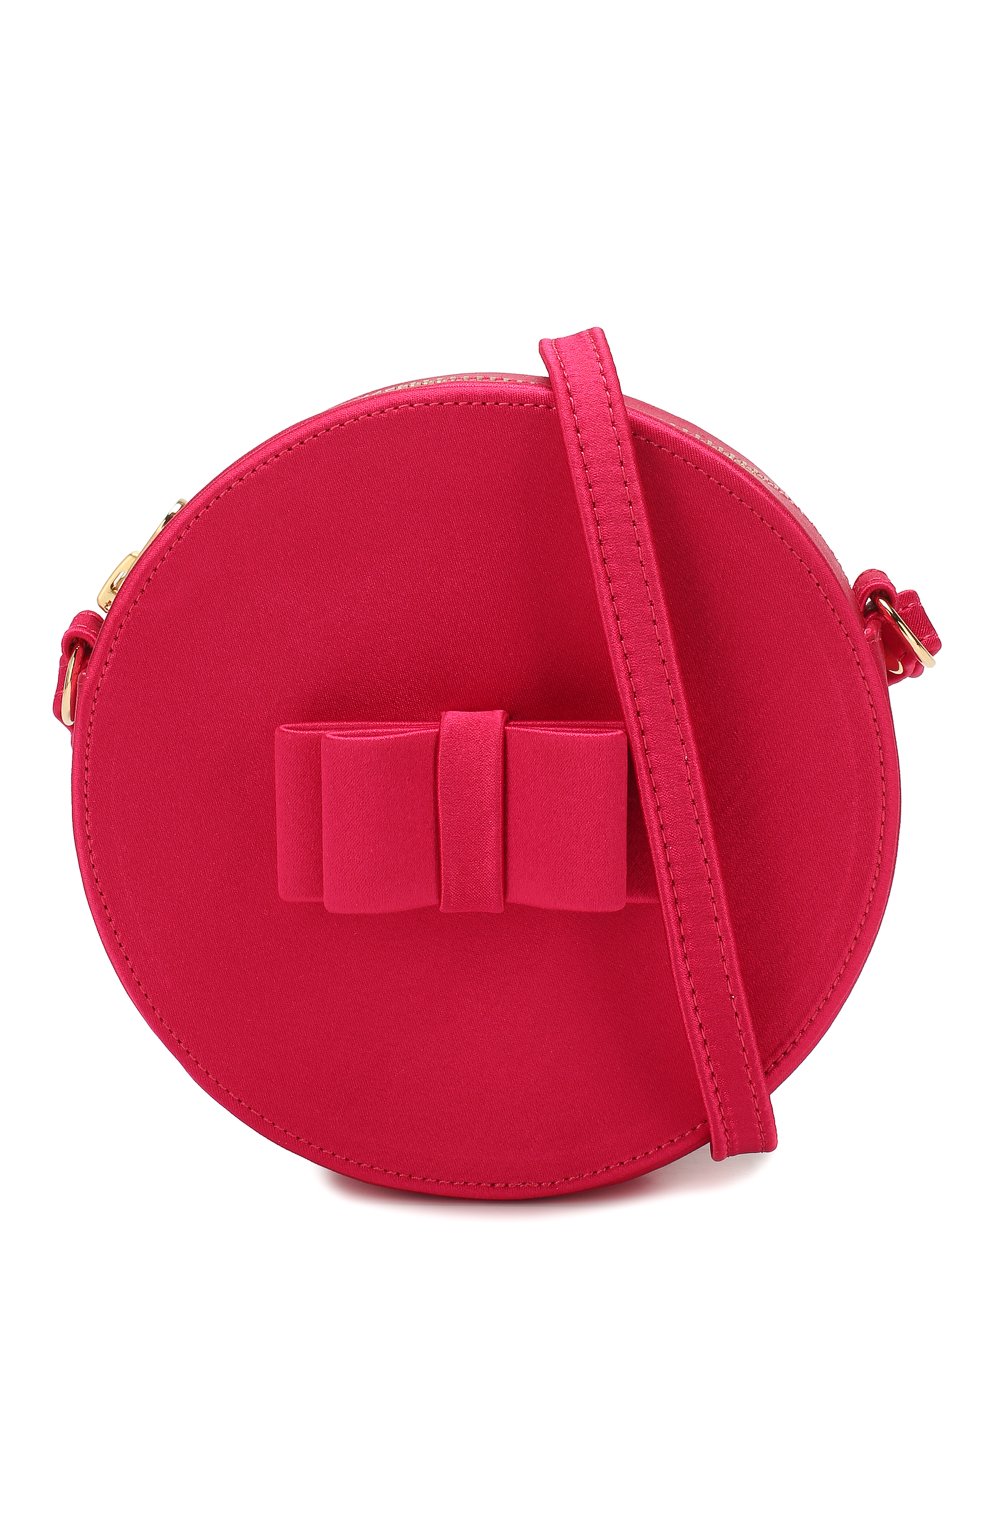 Детская сумка MARC JACOBS (THE) фуксия цвета, арт. W10153 | Фото 4 (Материал: Текстиль)